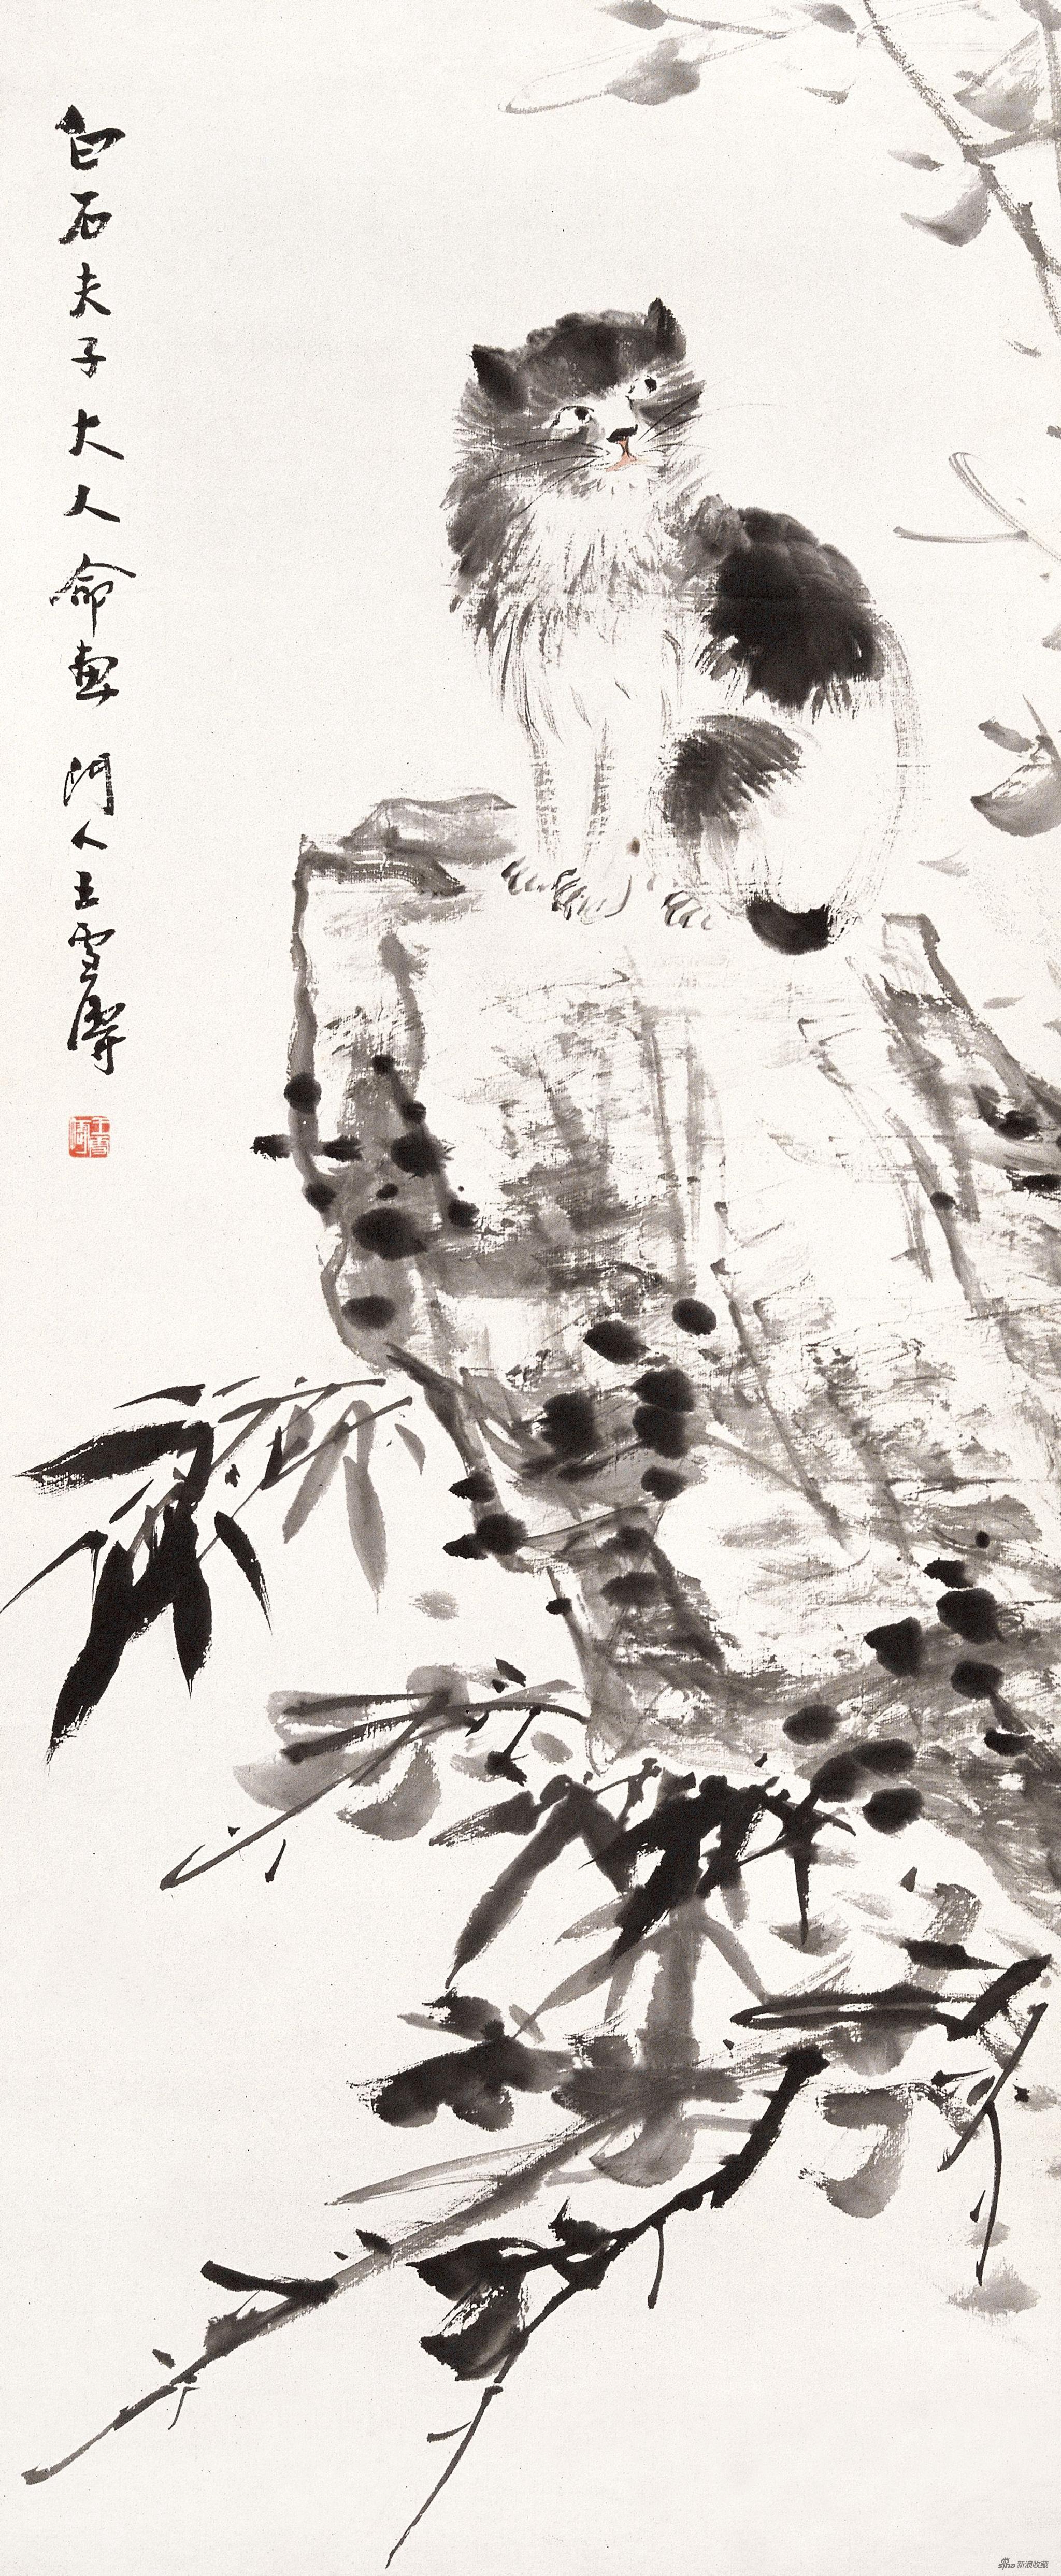 猫石图 王雪涛 100.5cm×42cm 纸本水墨 1930年 北京画院藏